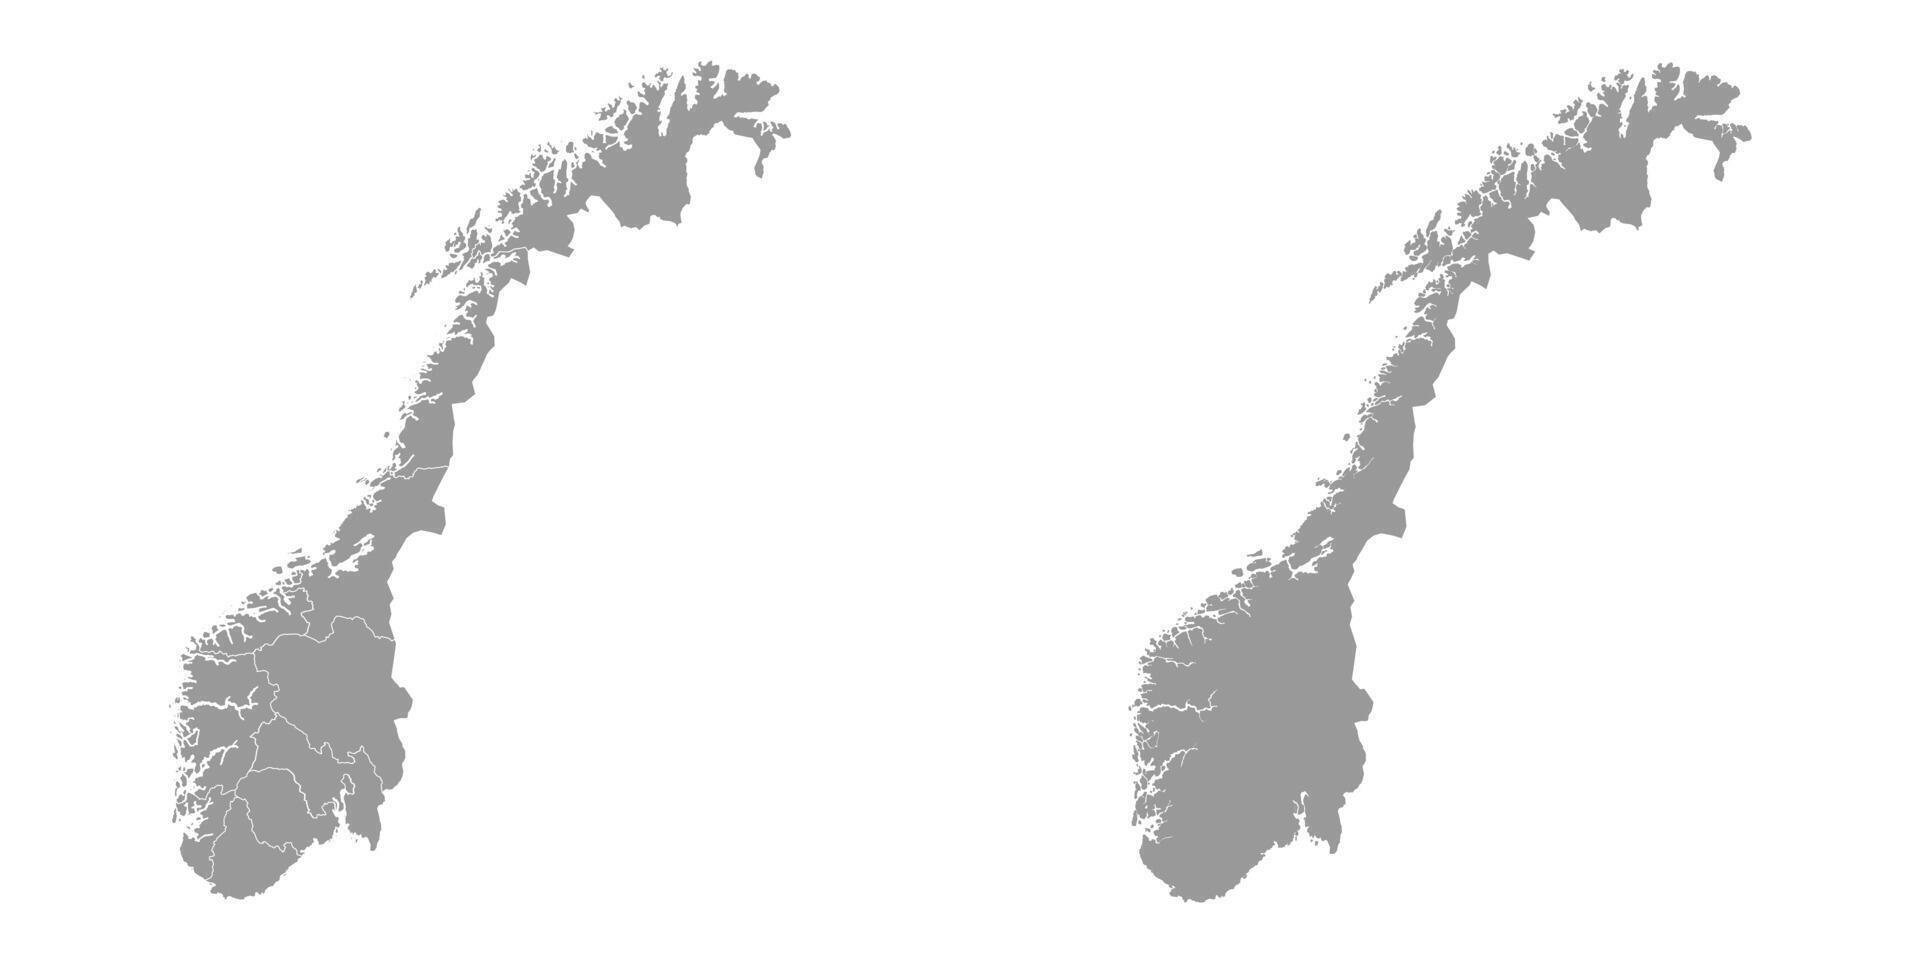 Norvegia grigio carta geografica con contea. vettore illustrazione.